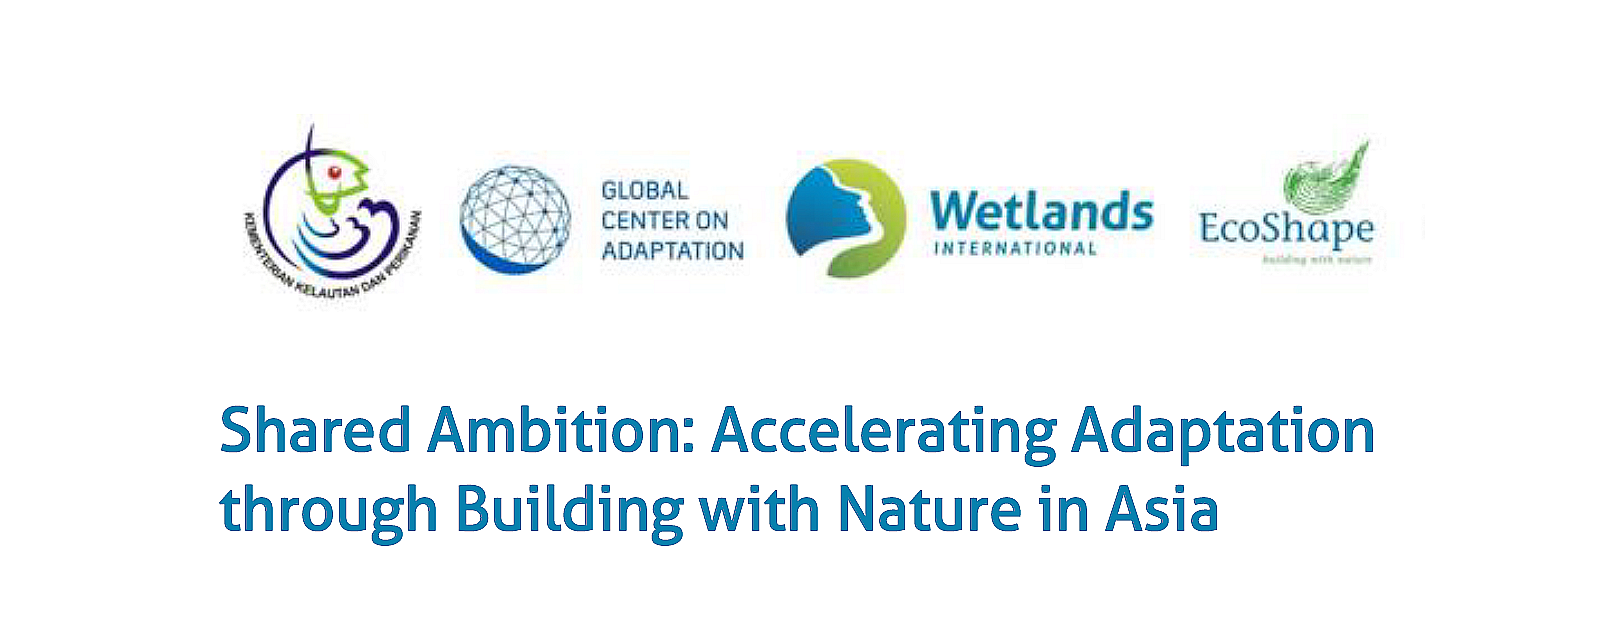 Gezamenlijke ambitie: Adaptatie versnellen door Bouwen met de Natuur in Azië 1